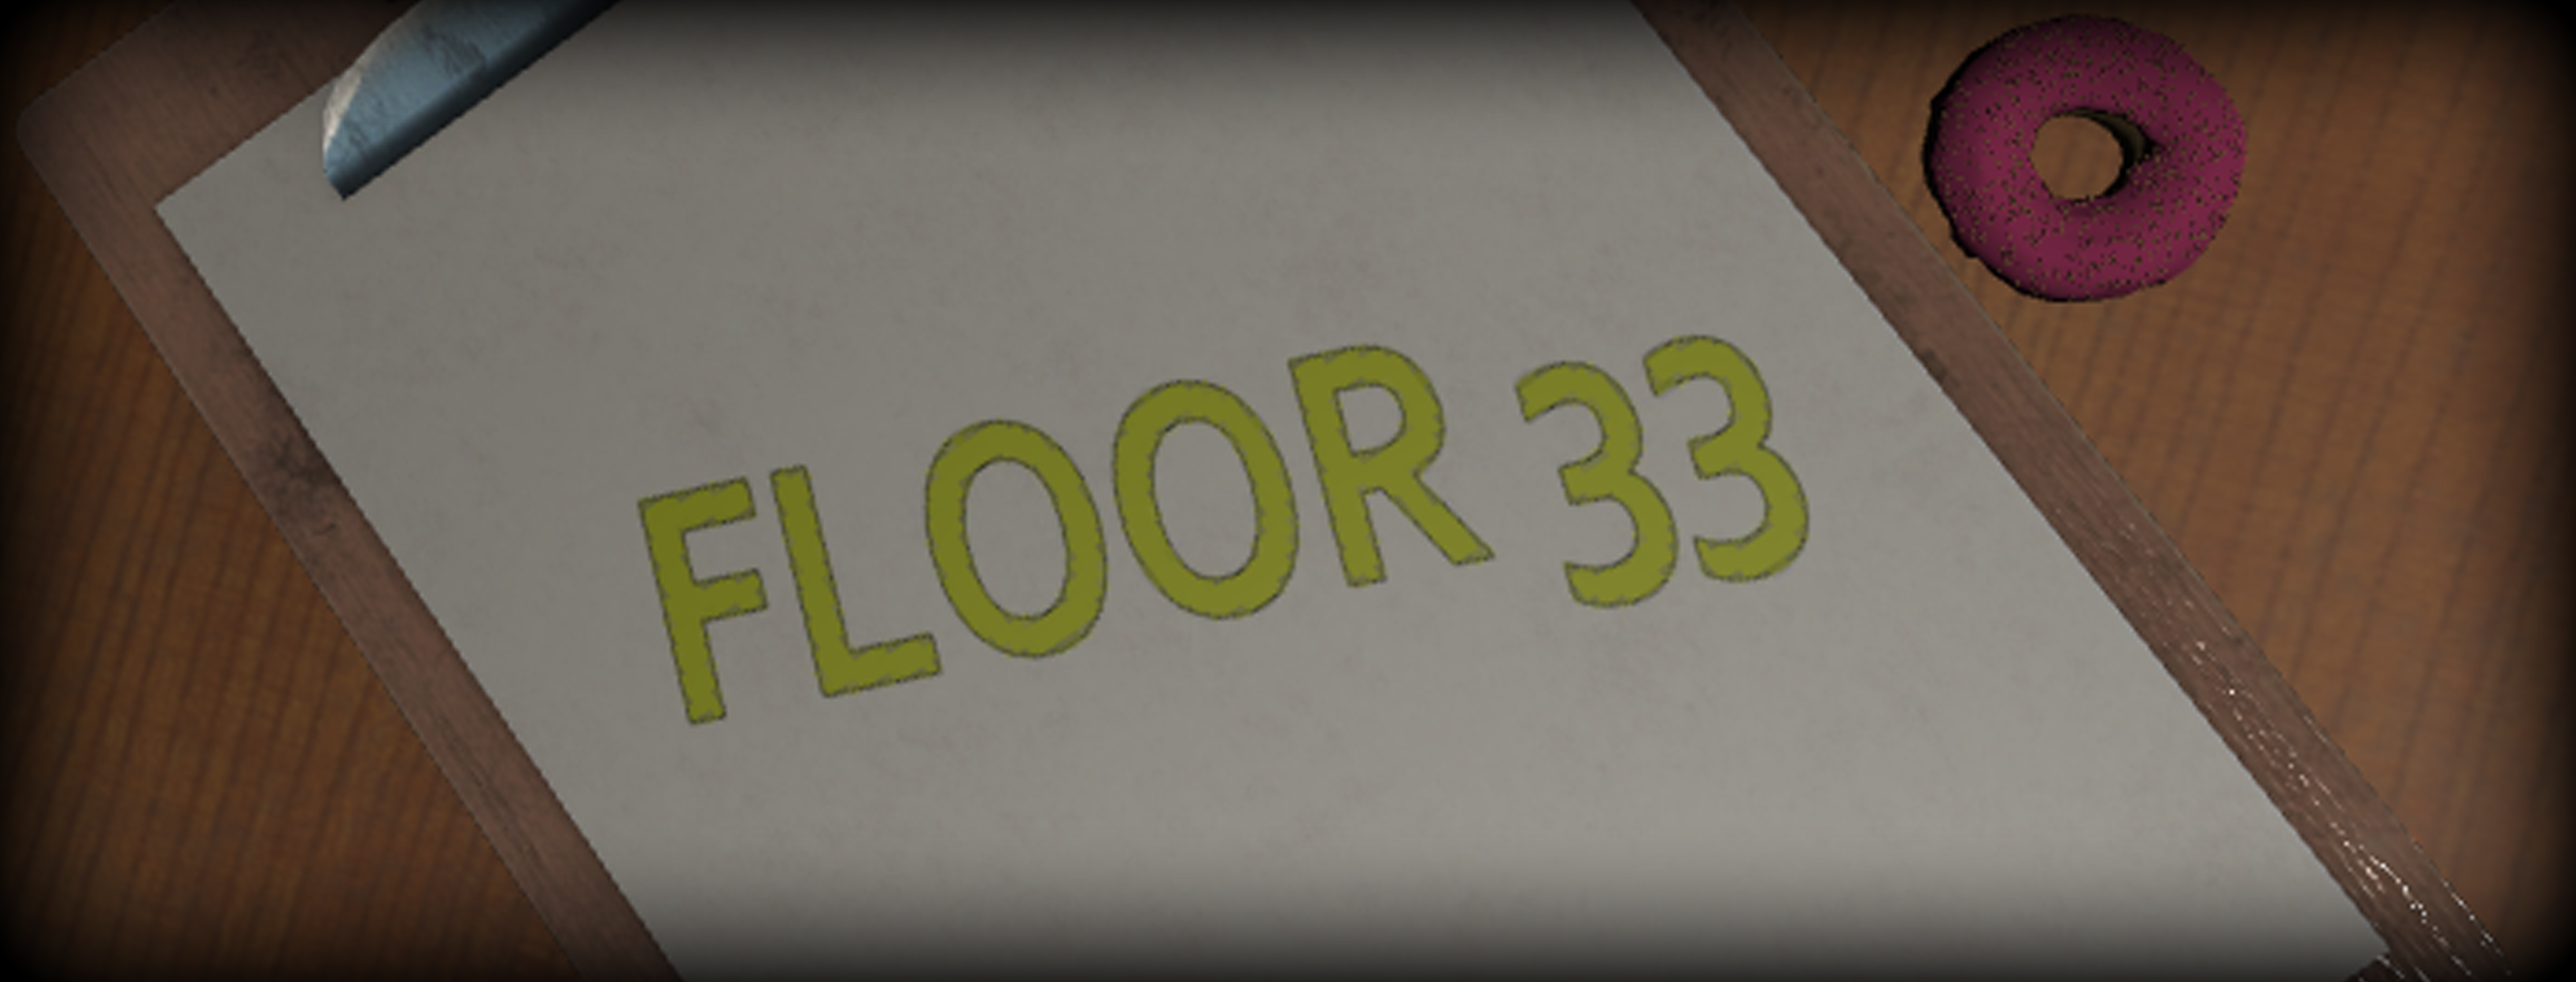 Floor 33